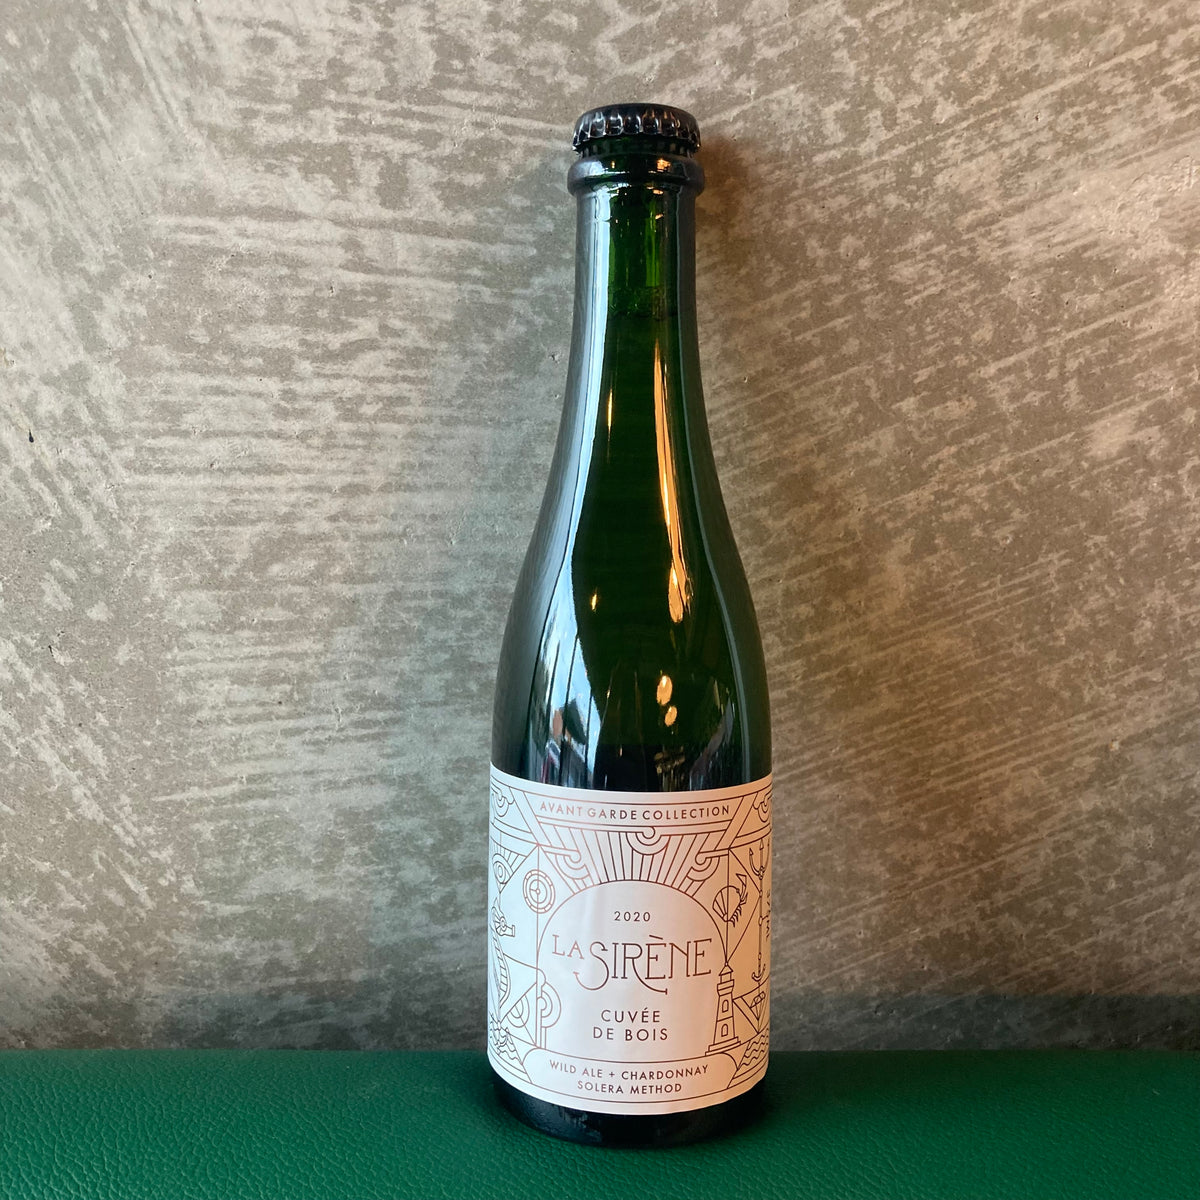 La Sirène Cuvée de Bois
– Hudsons Road Wine & Beer